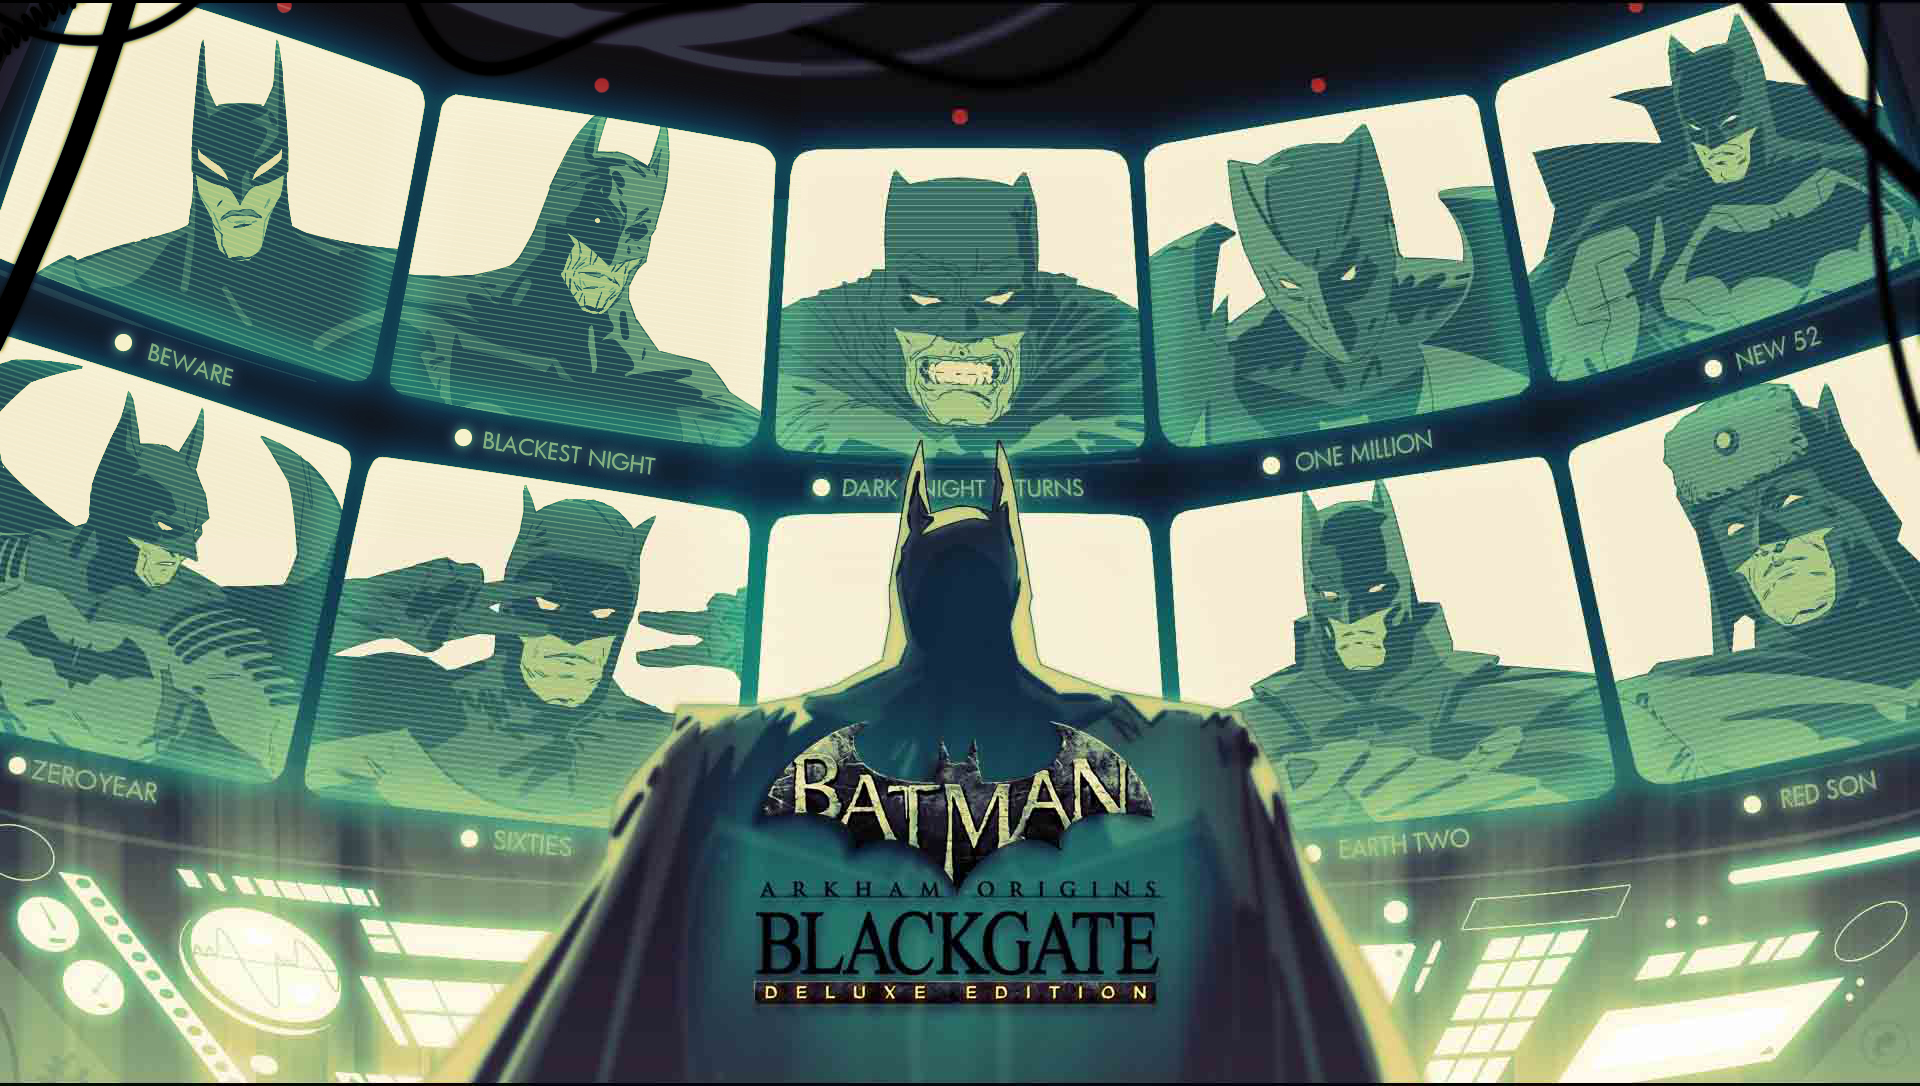 Batman: Arkham Origins Blackgate – Deluxe Edition Available Now